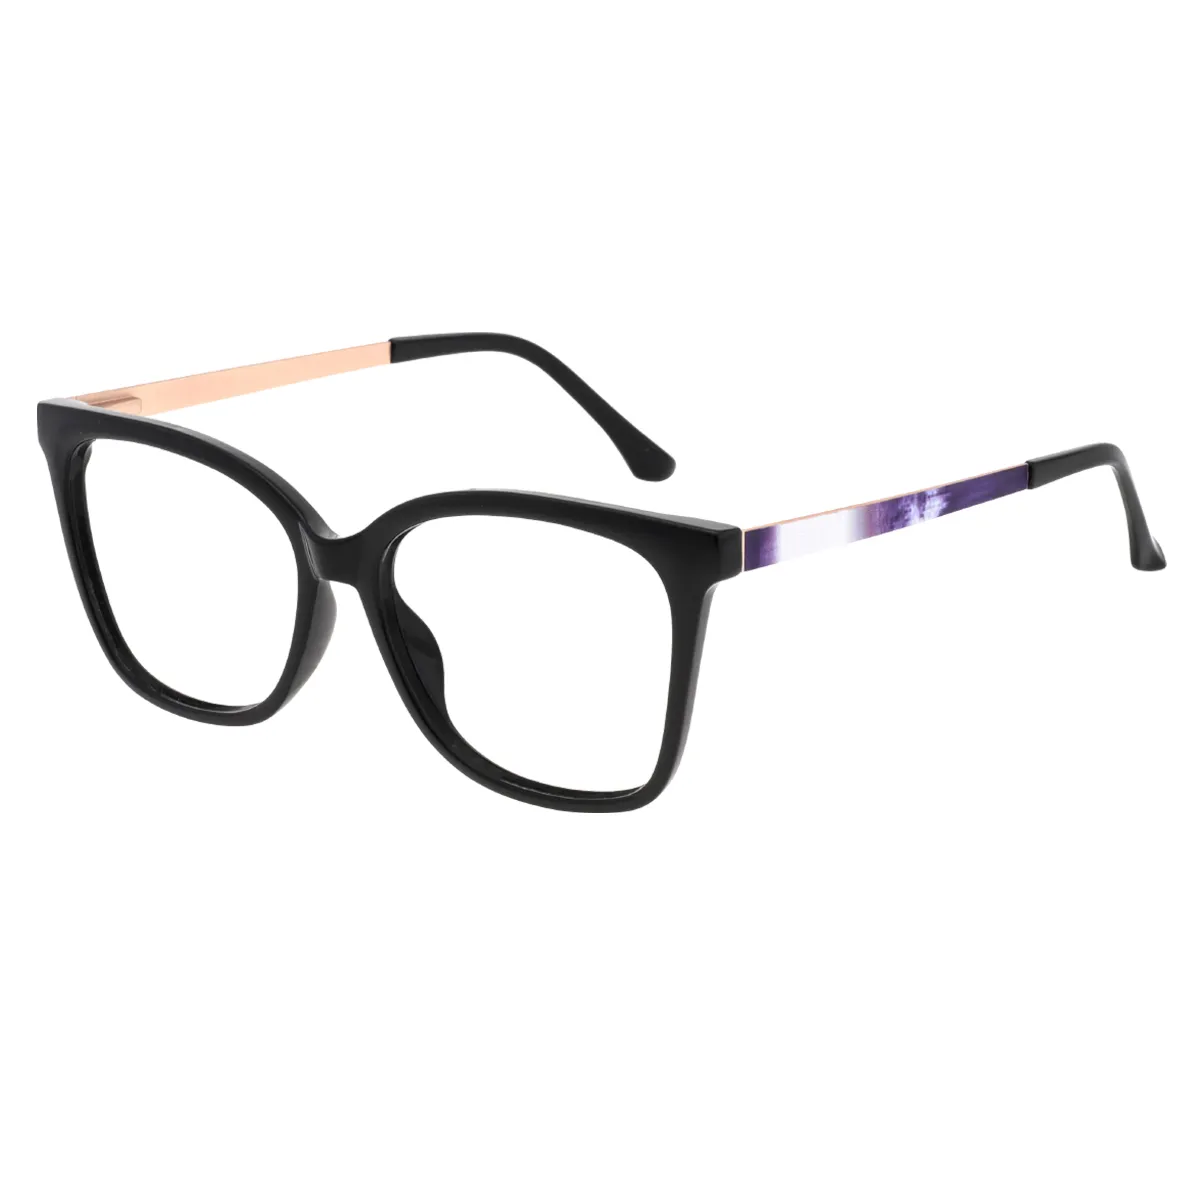 Lana - Square Black Glasses for Women - EFE